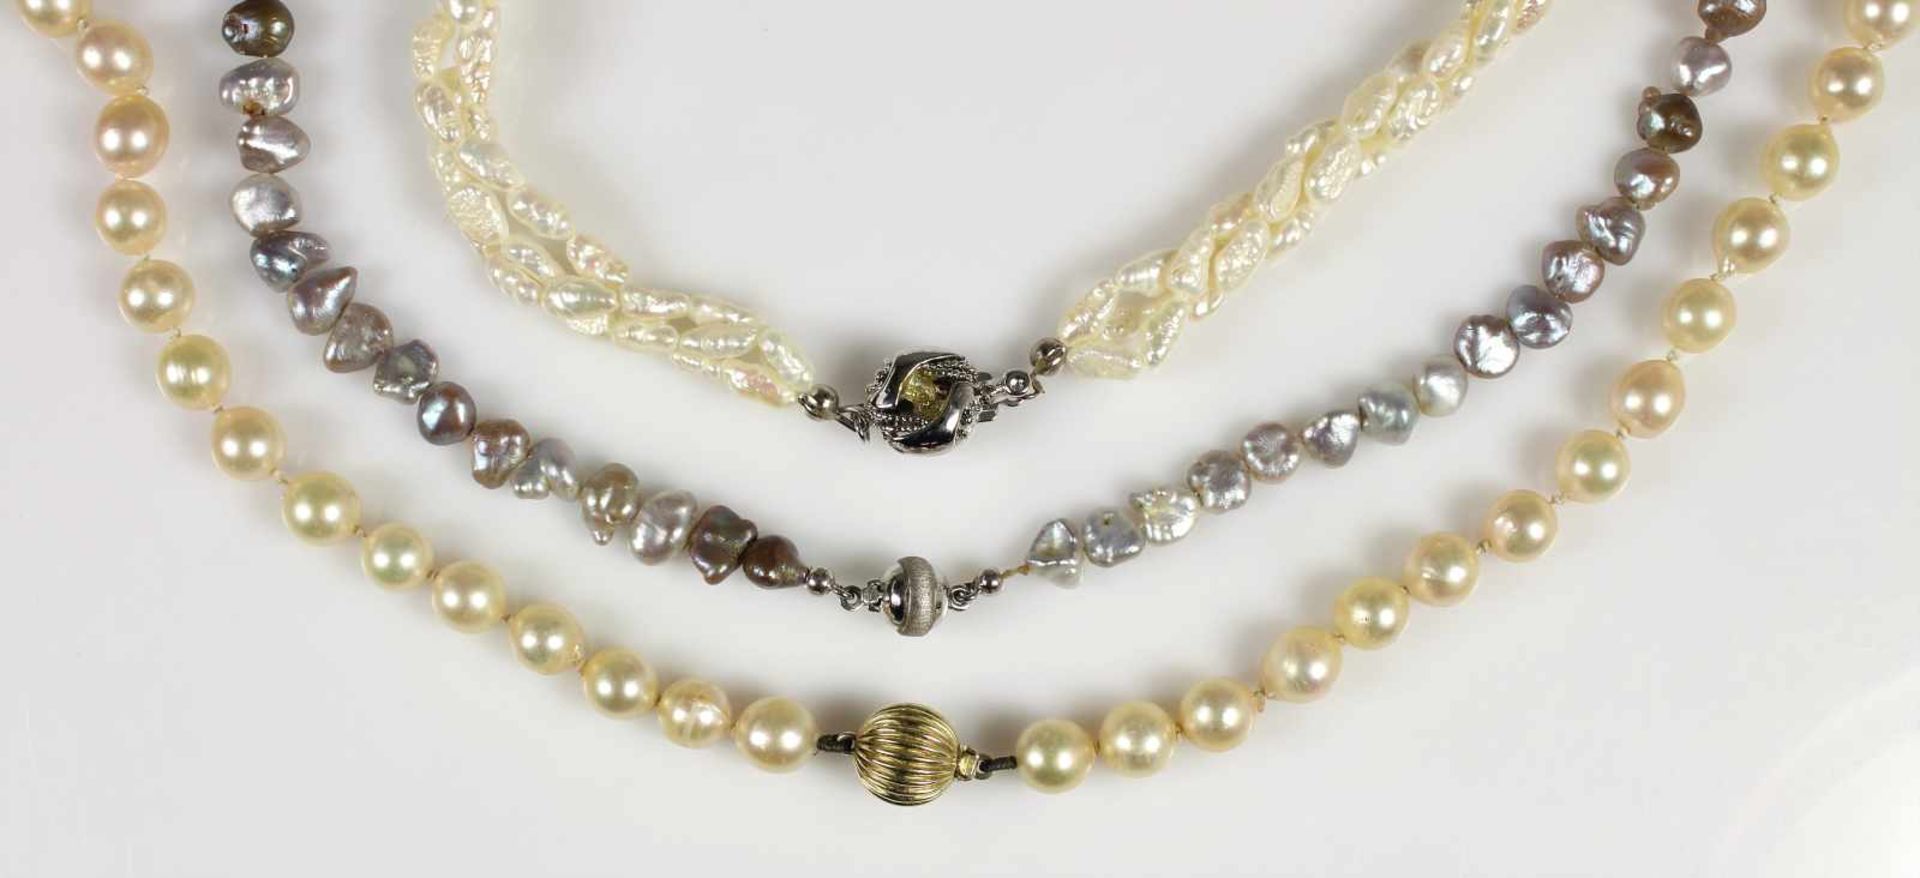 Lot Perlenketten: 1 Süßwasserkette (3 reihig), Schließe Silber (kl. Perle fehlt), L = 44,0 cm; 1